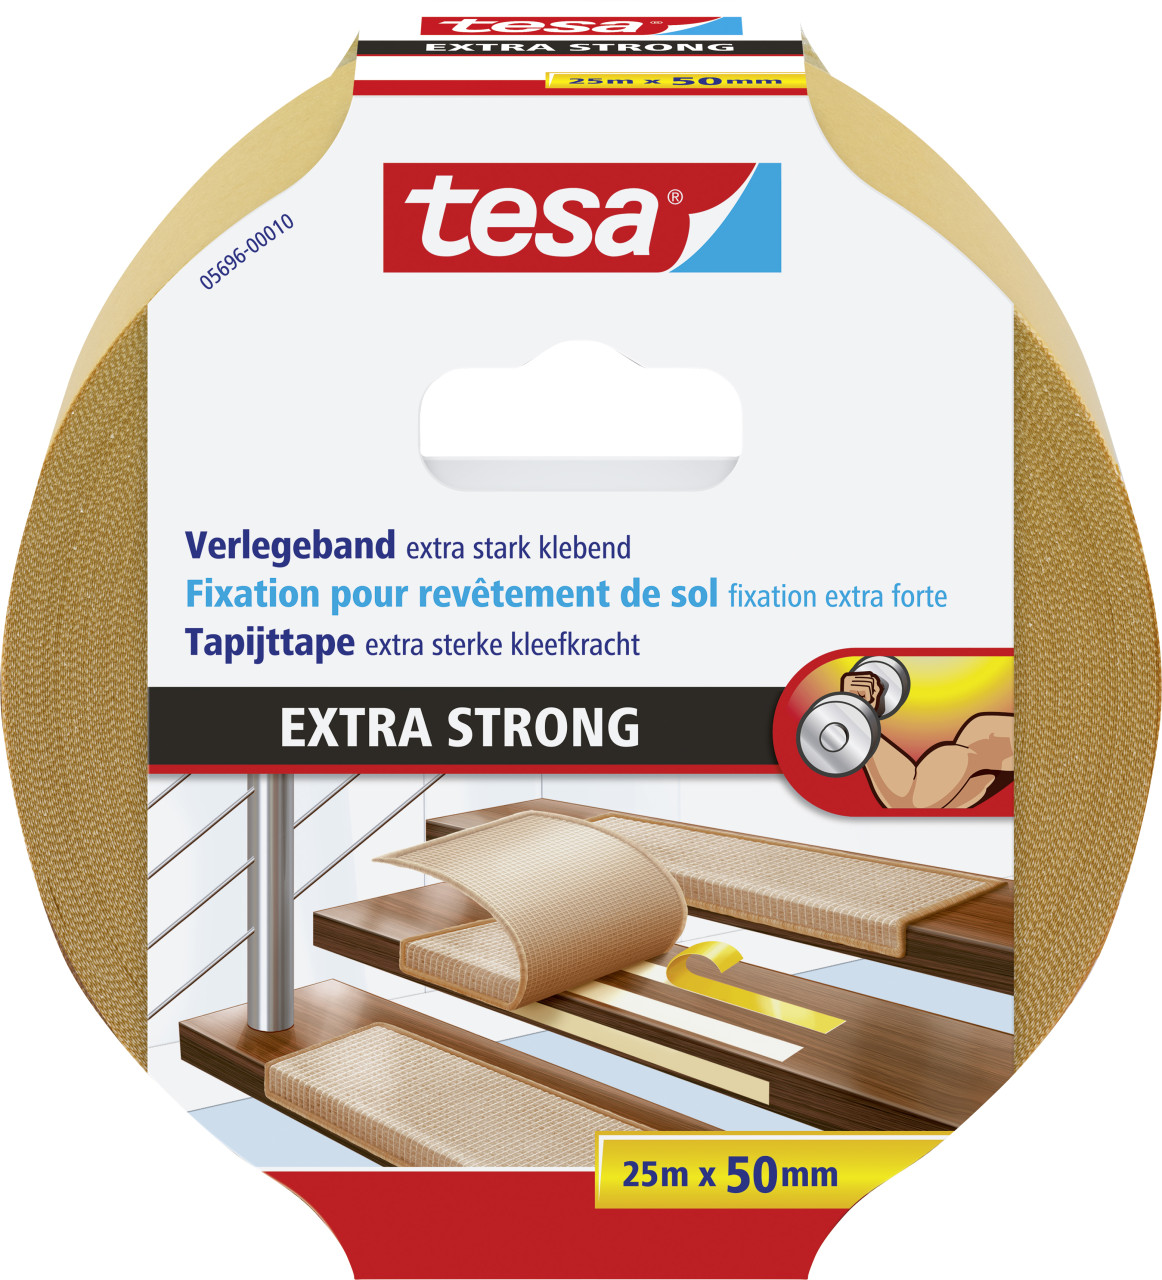 tesa Verlegeband 25 m x 50 mm, extra stark klebend von Tesa